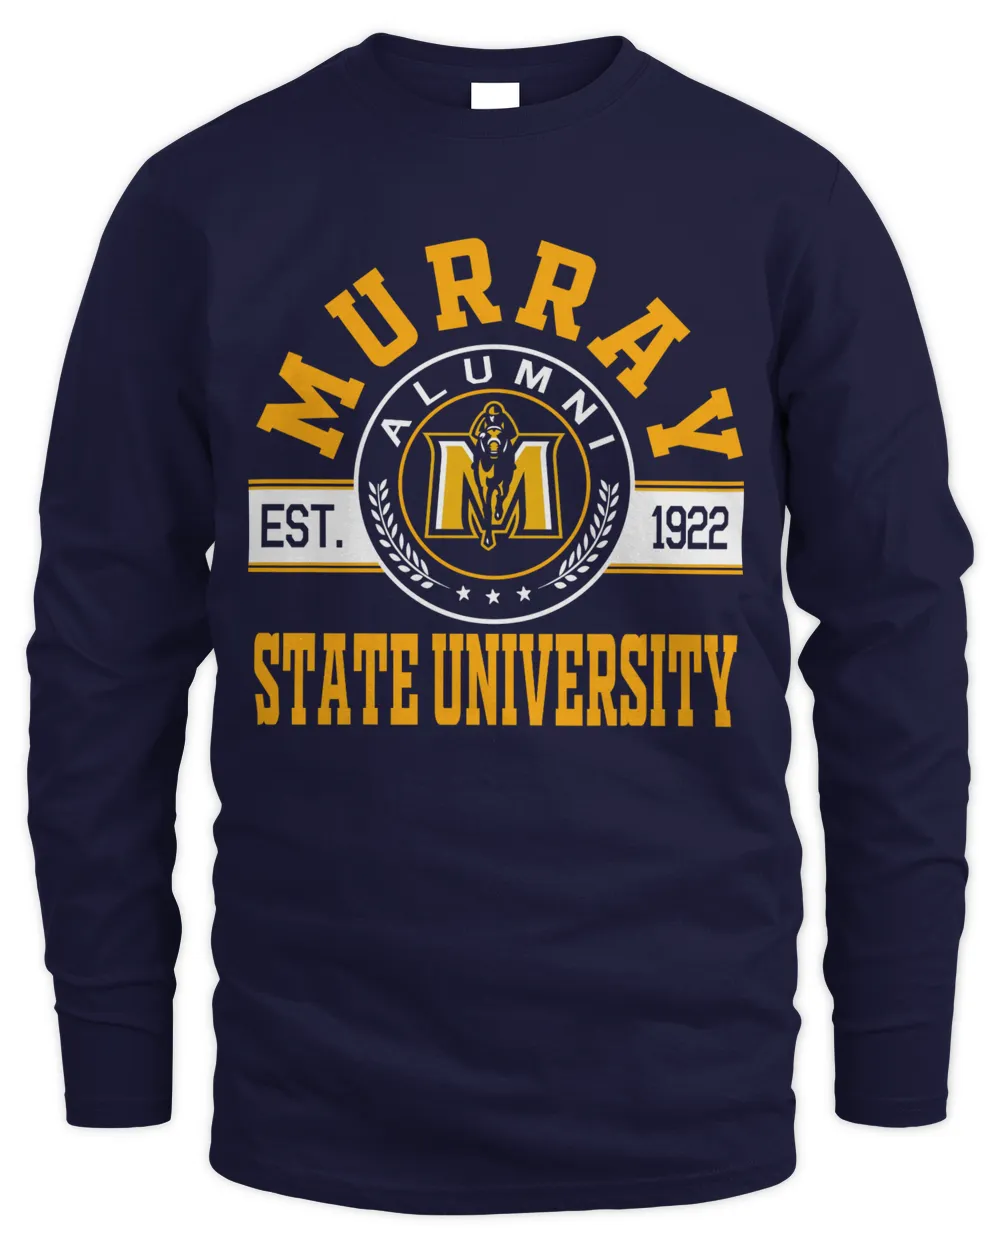 Murray State University Lgo02